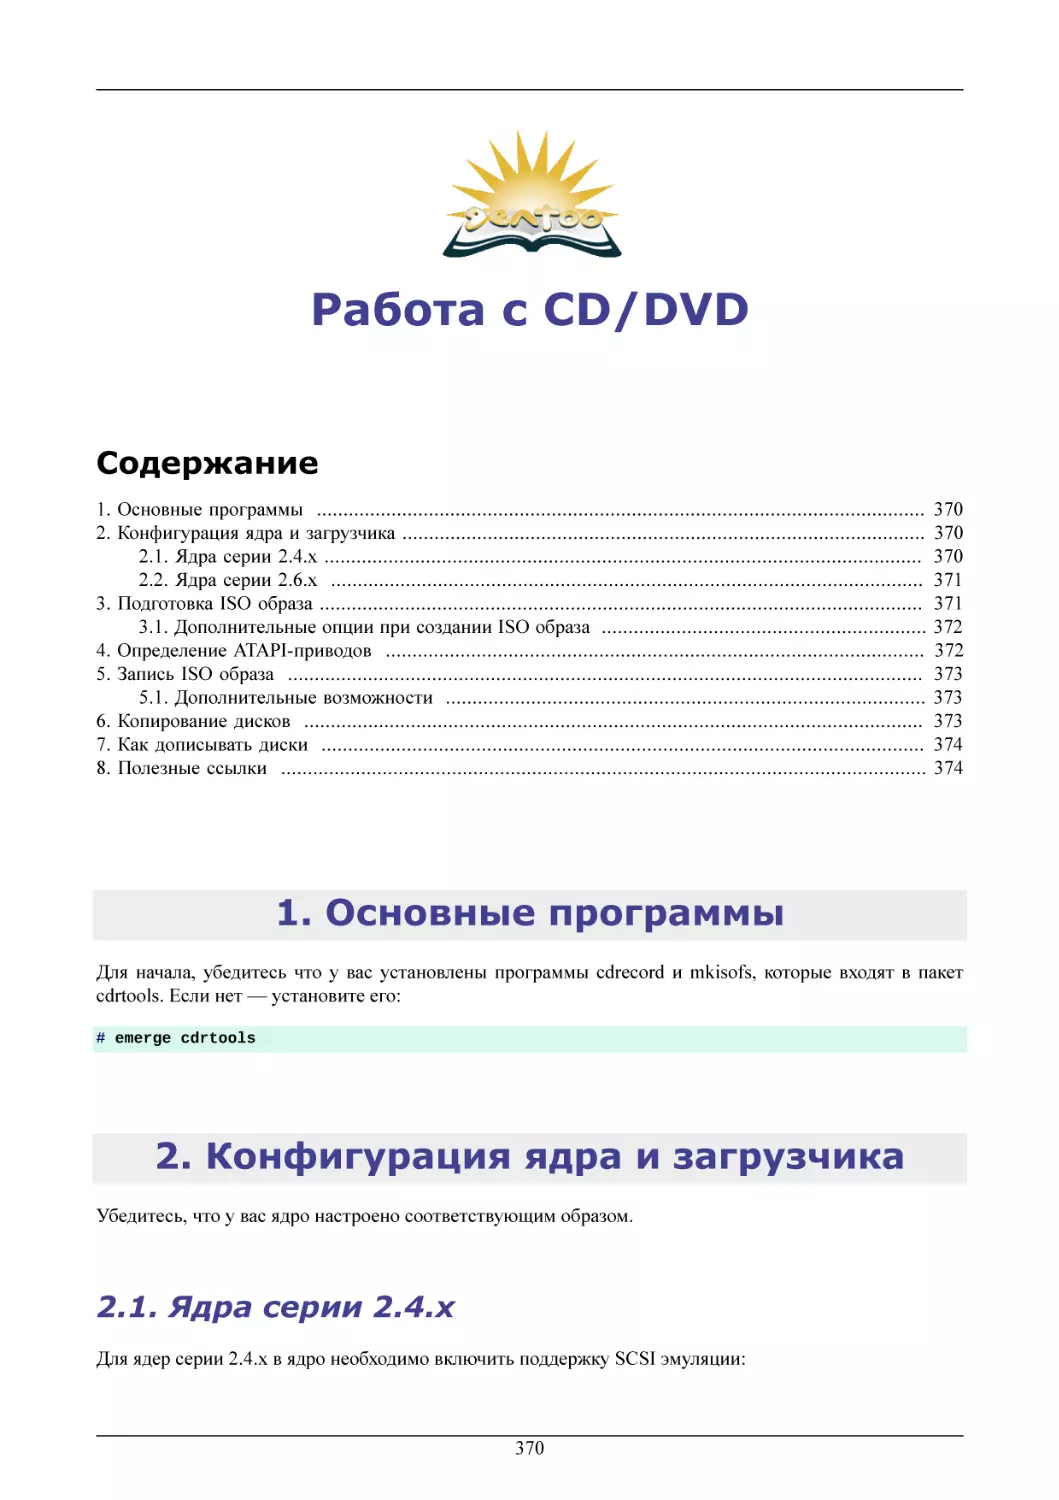 Работа с CD/DVD
Основные программы
Конфигурация ядра и загрузчика
Ядра серии 2.4.x